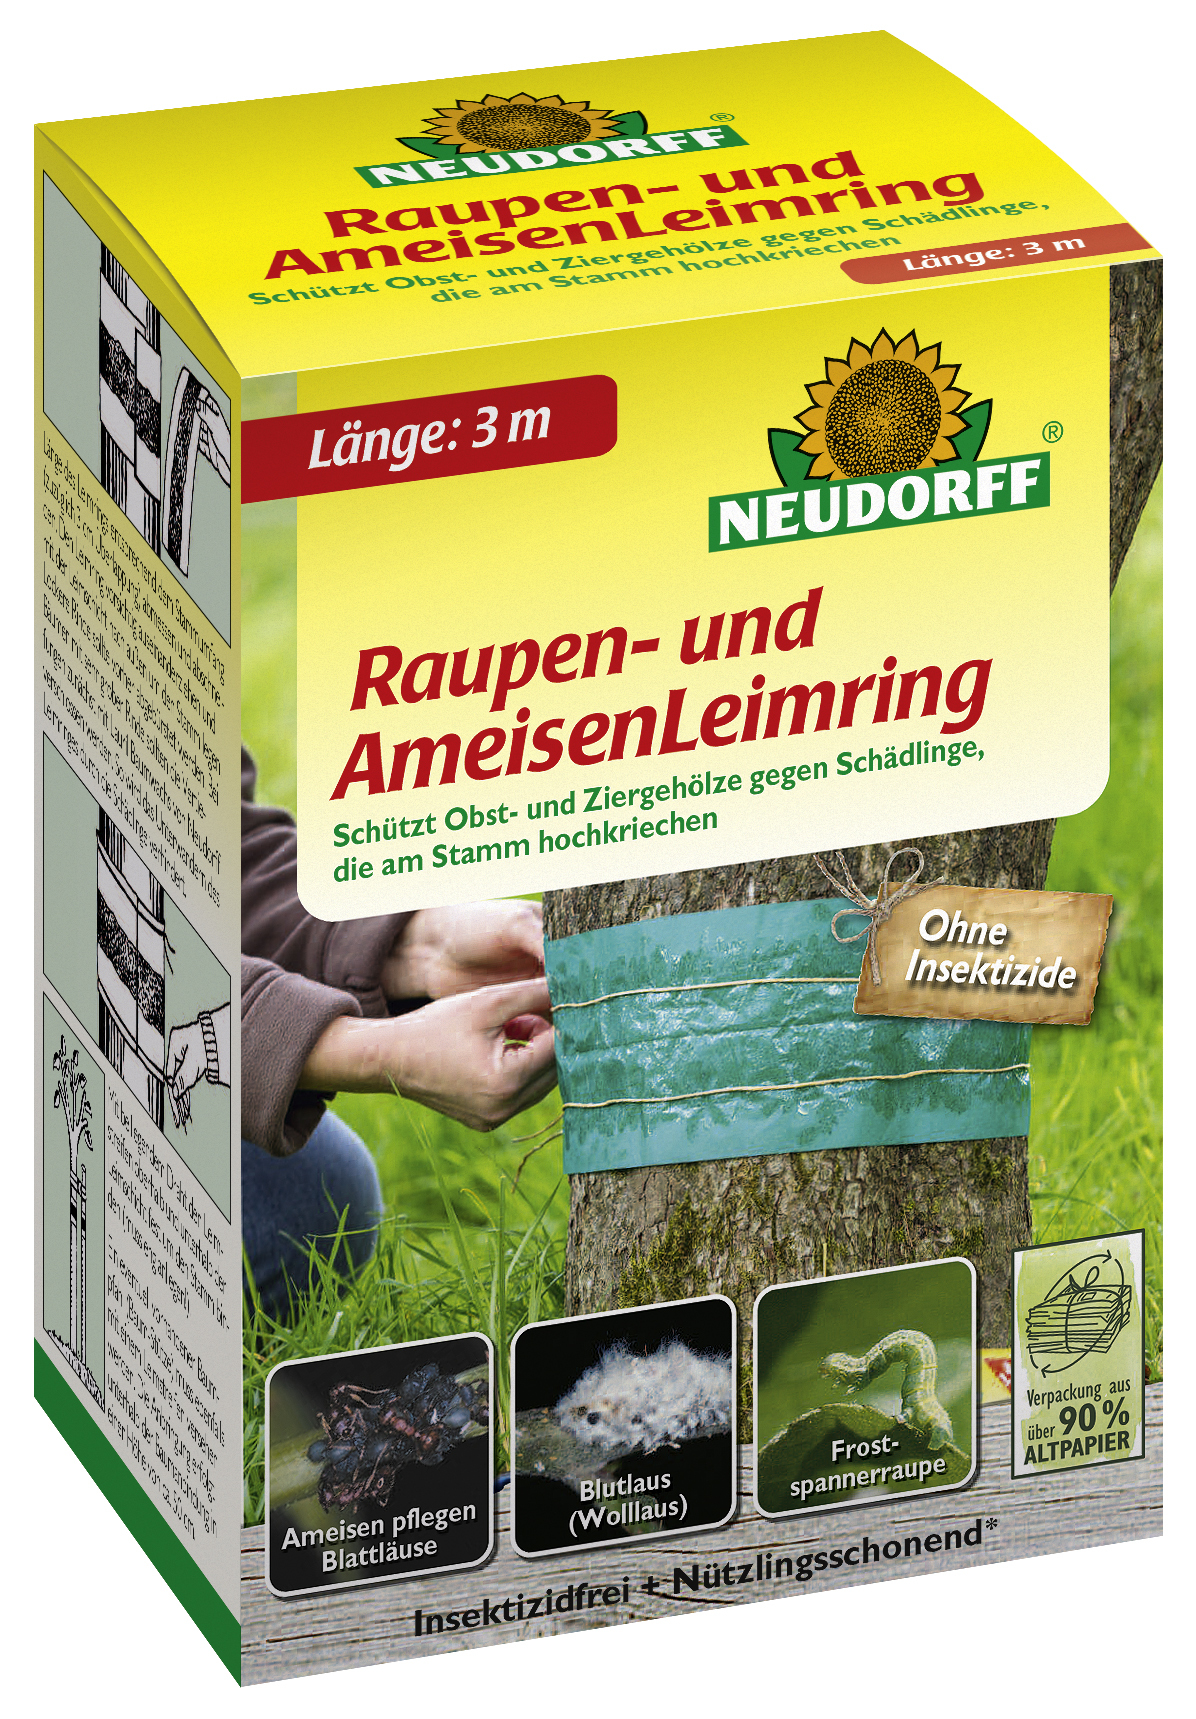 W. Neudorff GmbH KG Raupen- und AmeisenLeimring